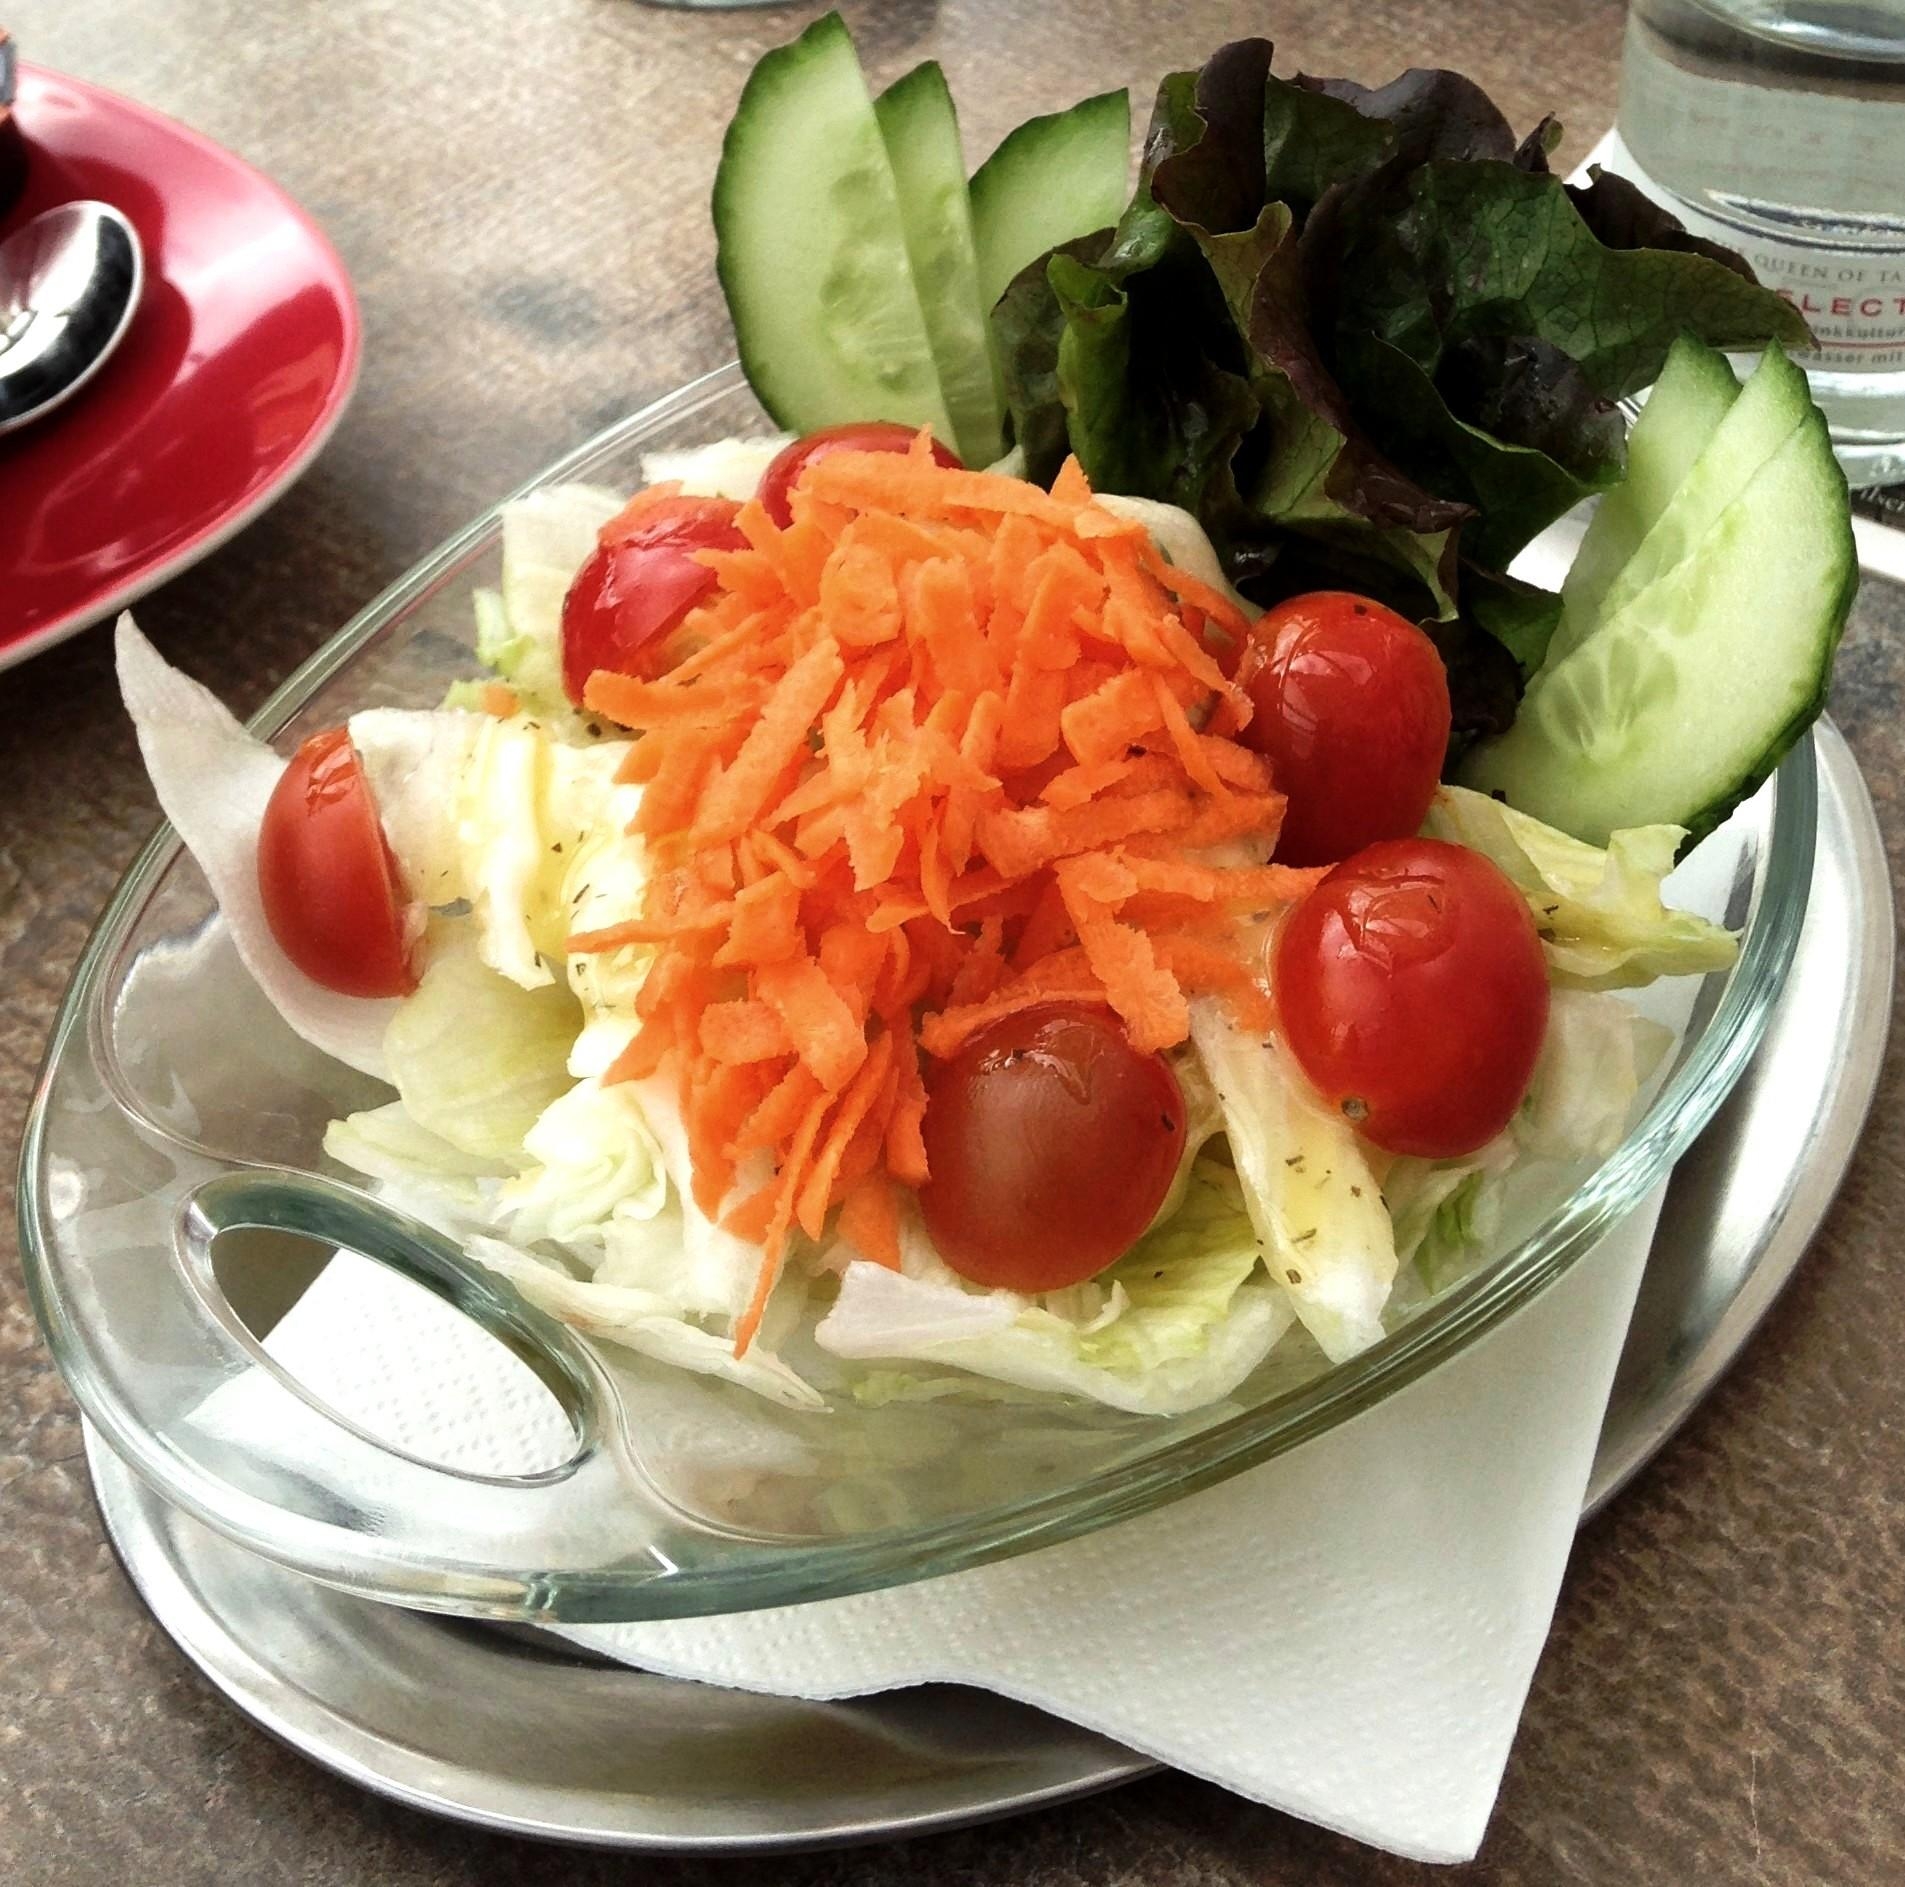 Ein leichter Salat im Sommer geht immer :)
#outdoorweek
#summerfood #foodlover